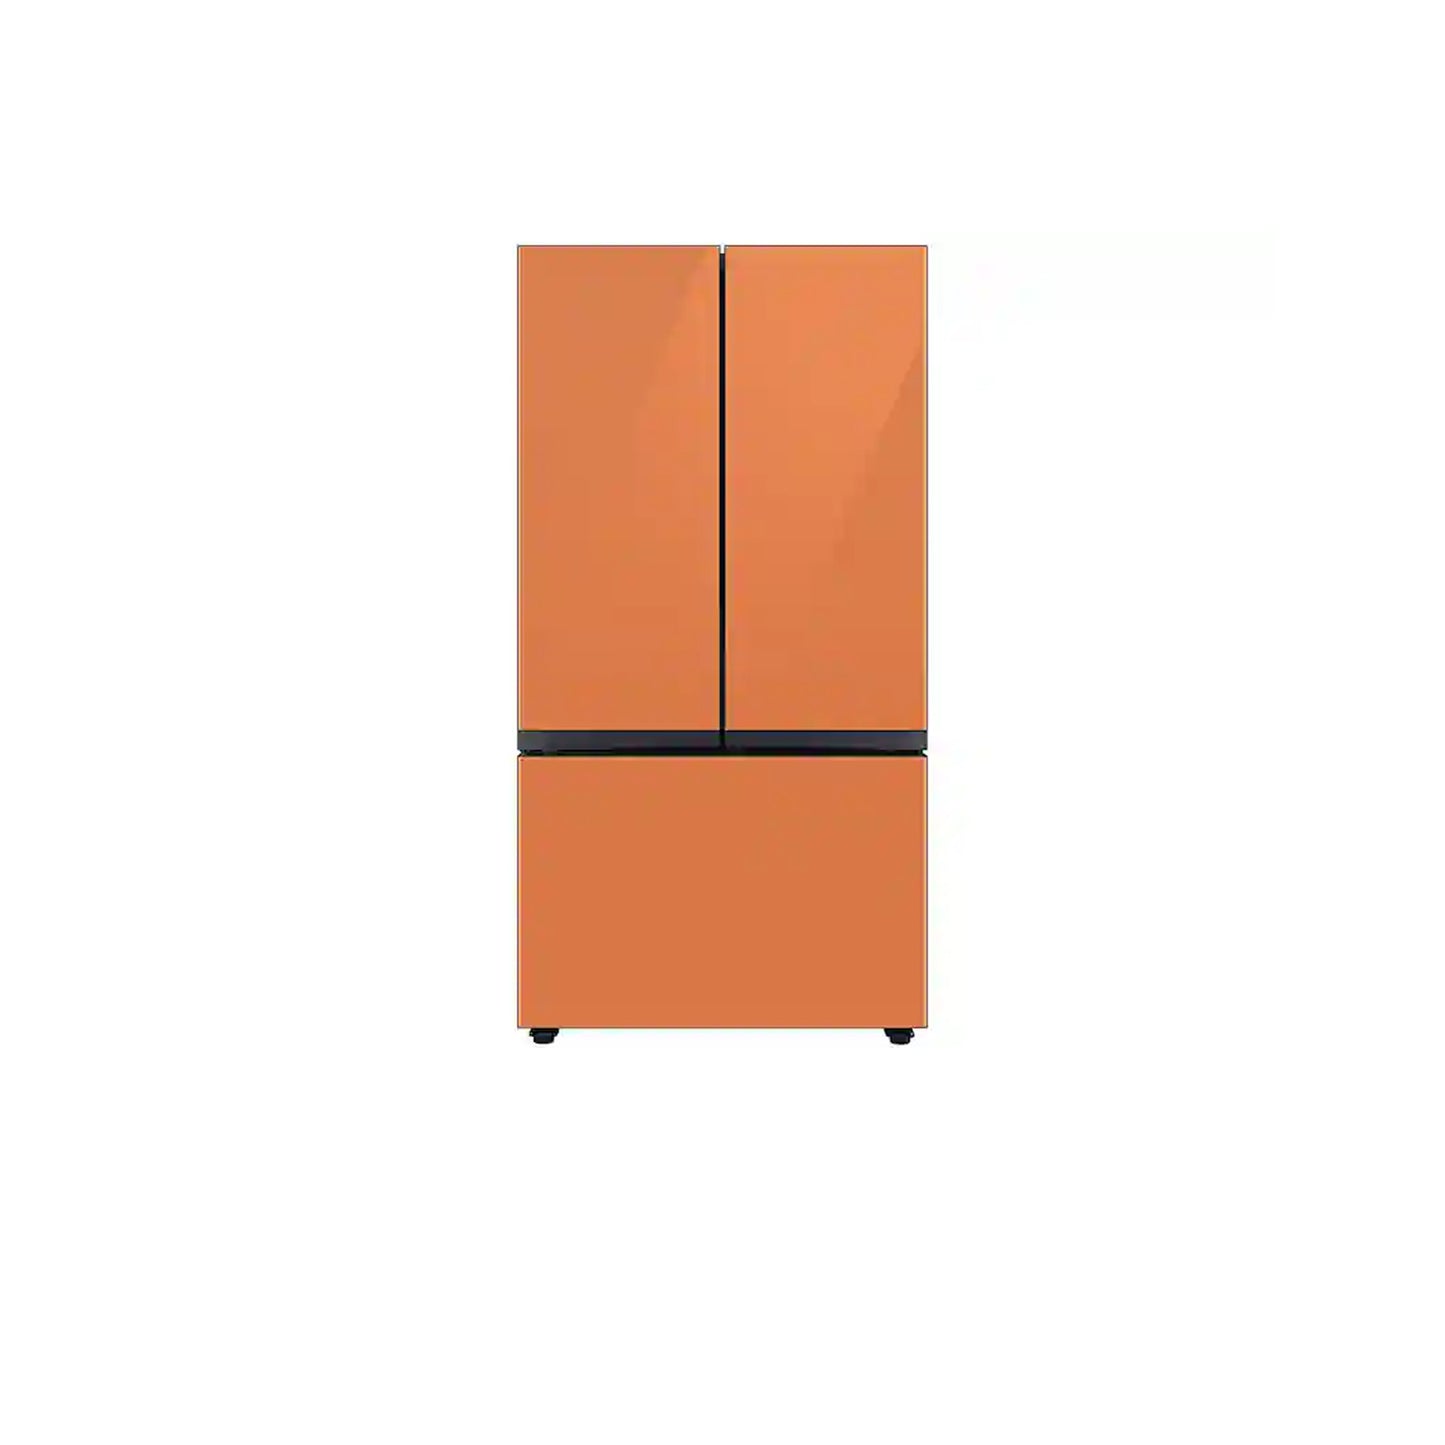 ثلاجة مخصصة بباب فرنسي بثلاثة أبواب (30 قدمًا مكعبًا) مزودة بمركز المشروبات™ من الفولاذ المقاوم للصدأ. 